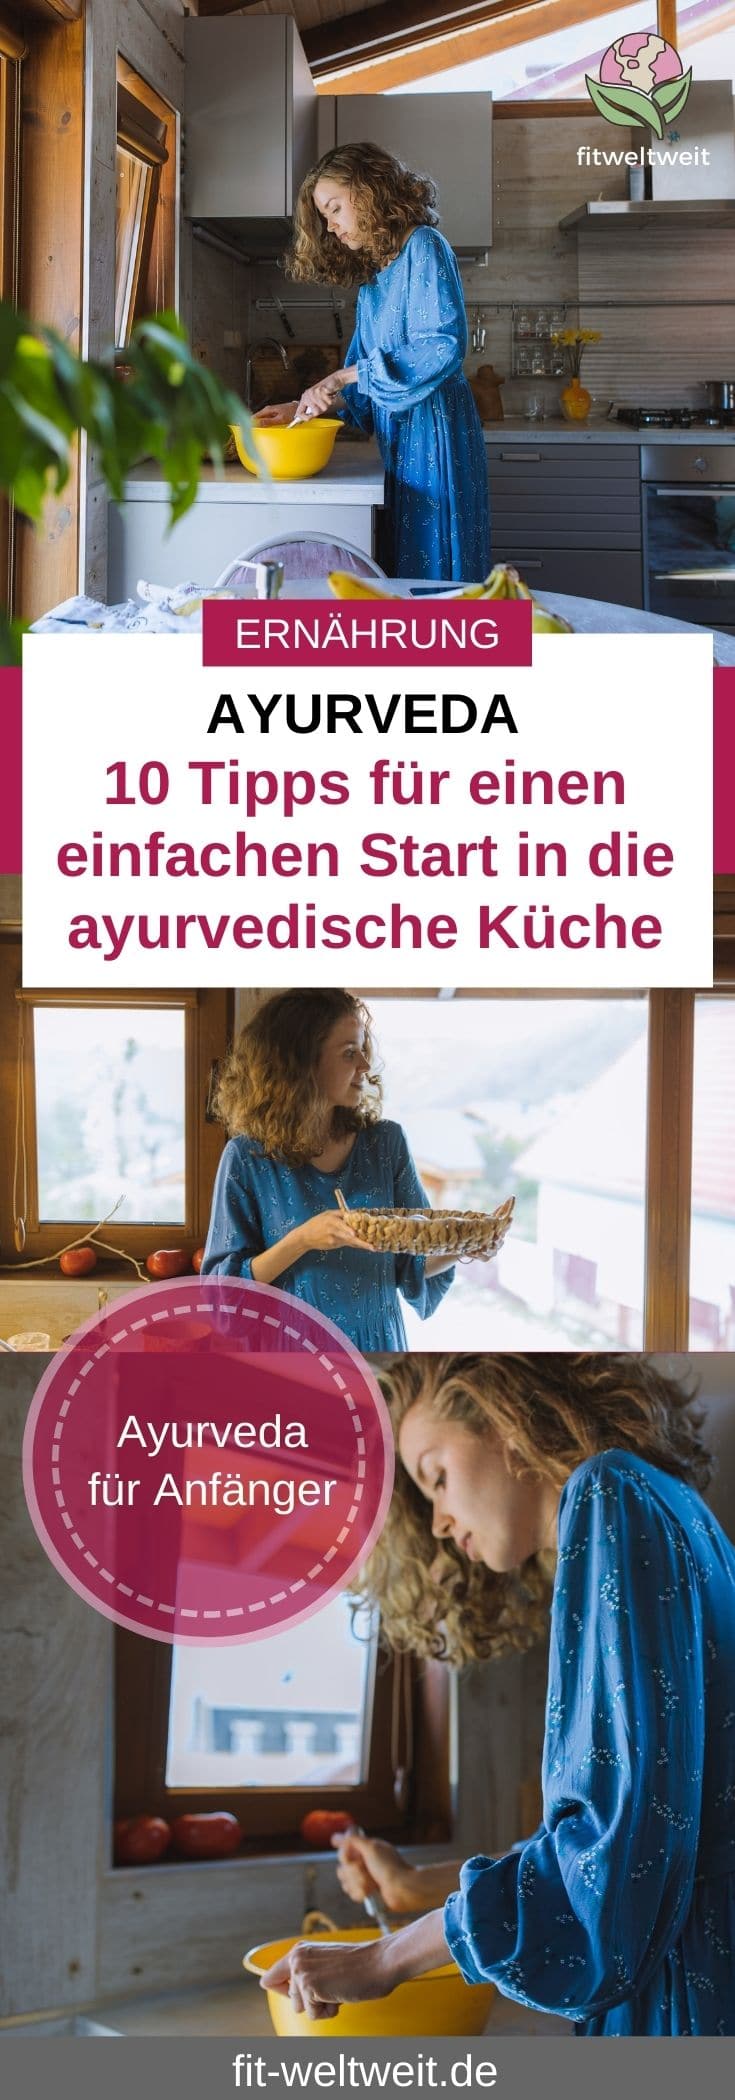 Ayurveda Ernährung Tipps für den Start Dosha Pitta Kapha Vata